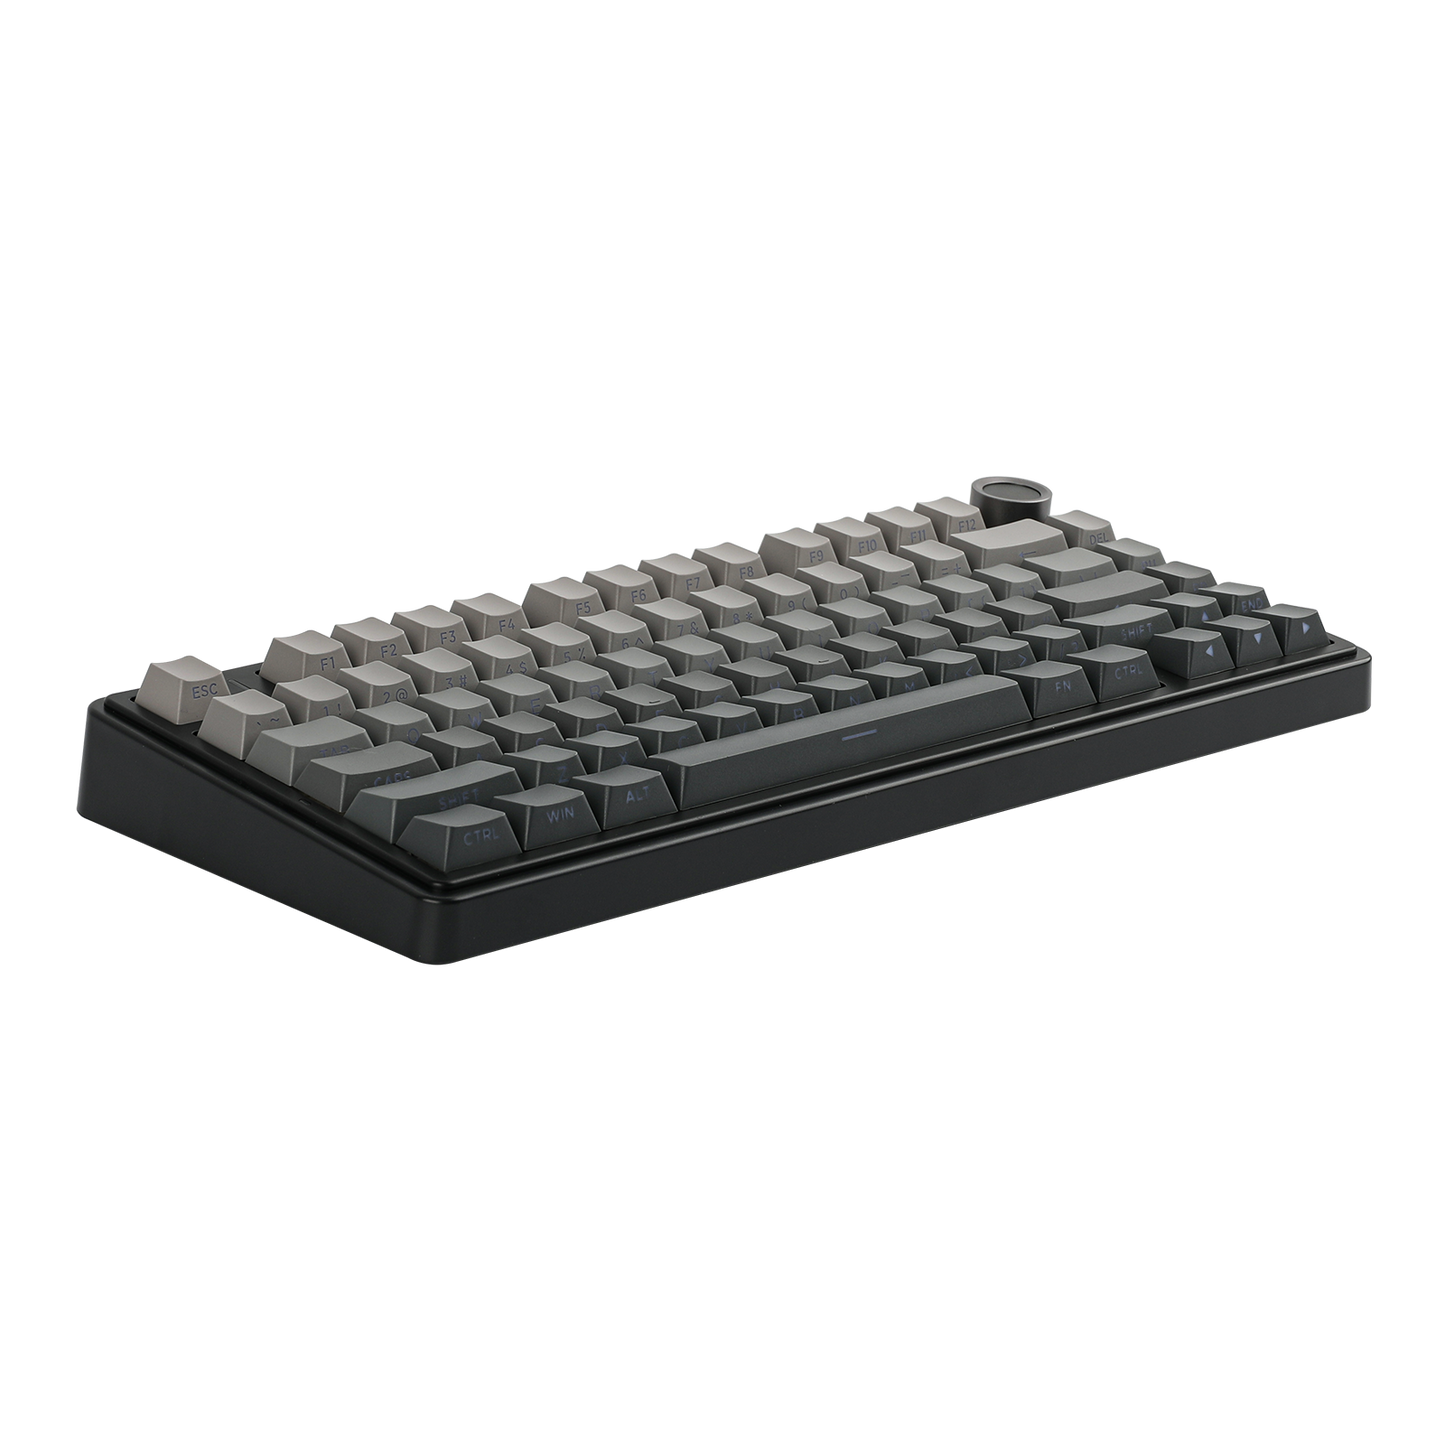 EPOMAKER X AULA F75 Mechanical Tri-mode RGB Gaming Keyboard